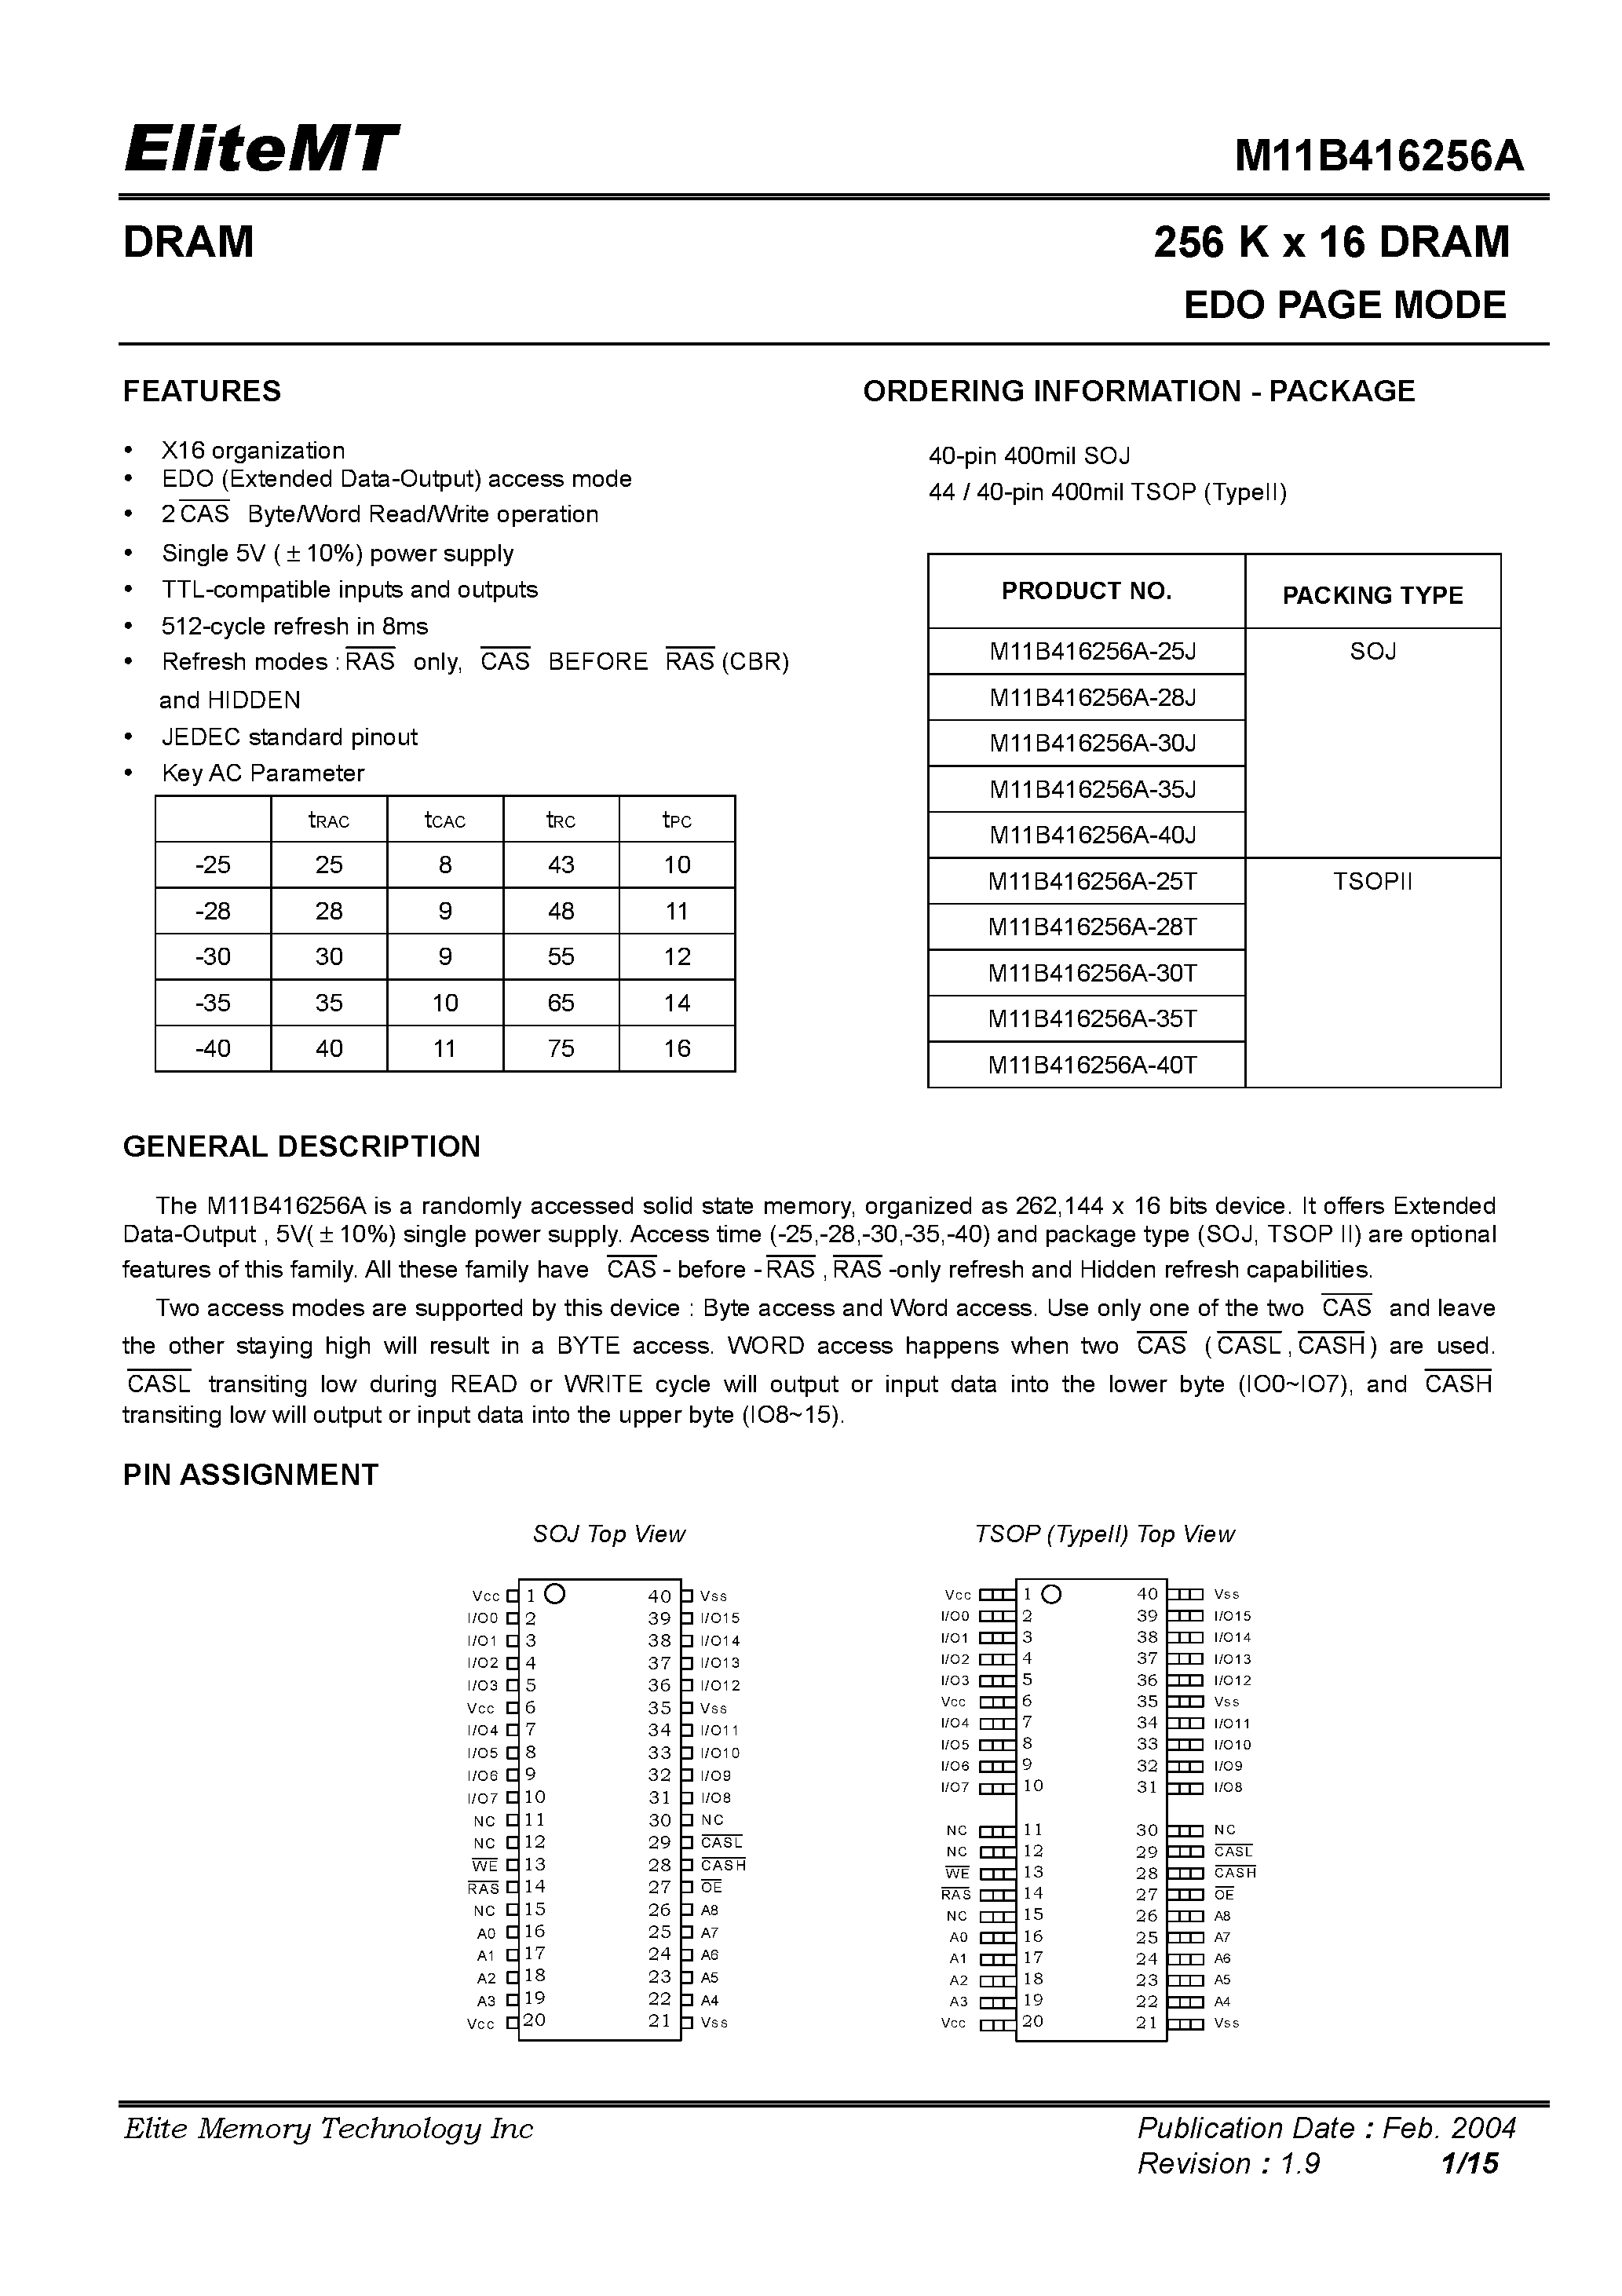 Datasheet M11B416256A-25T - 256 K x 16 DRAM EDO PAGE MODE page 1